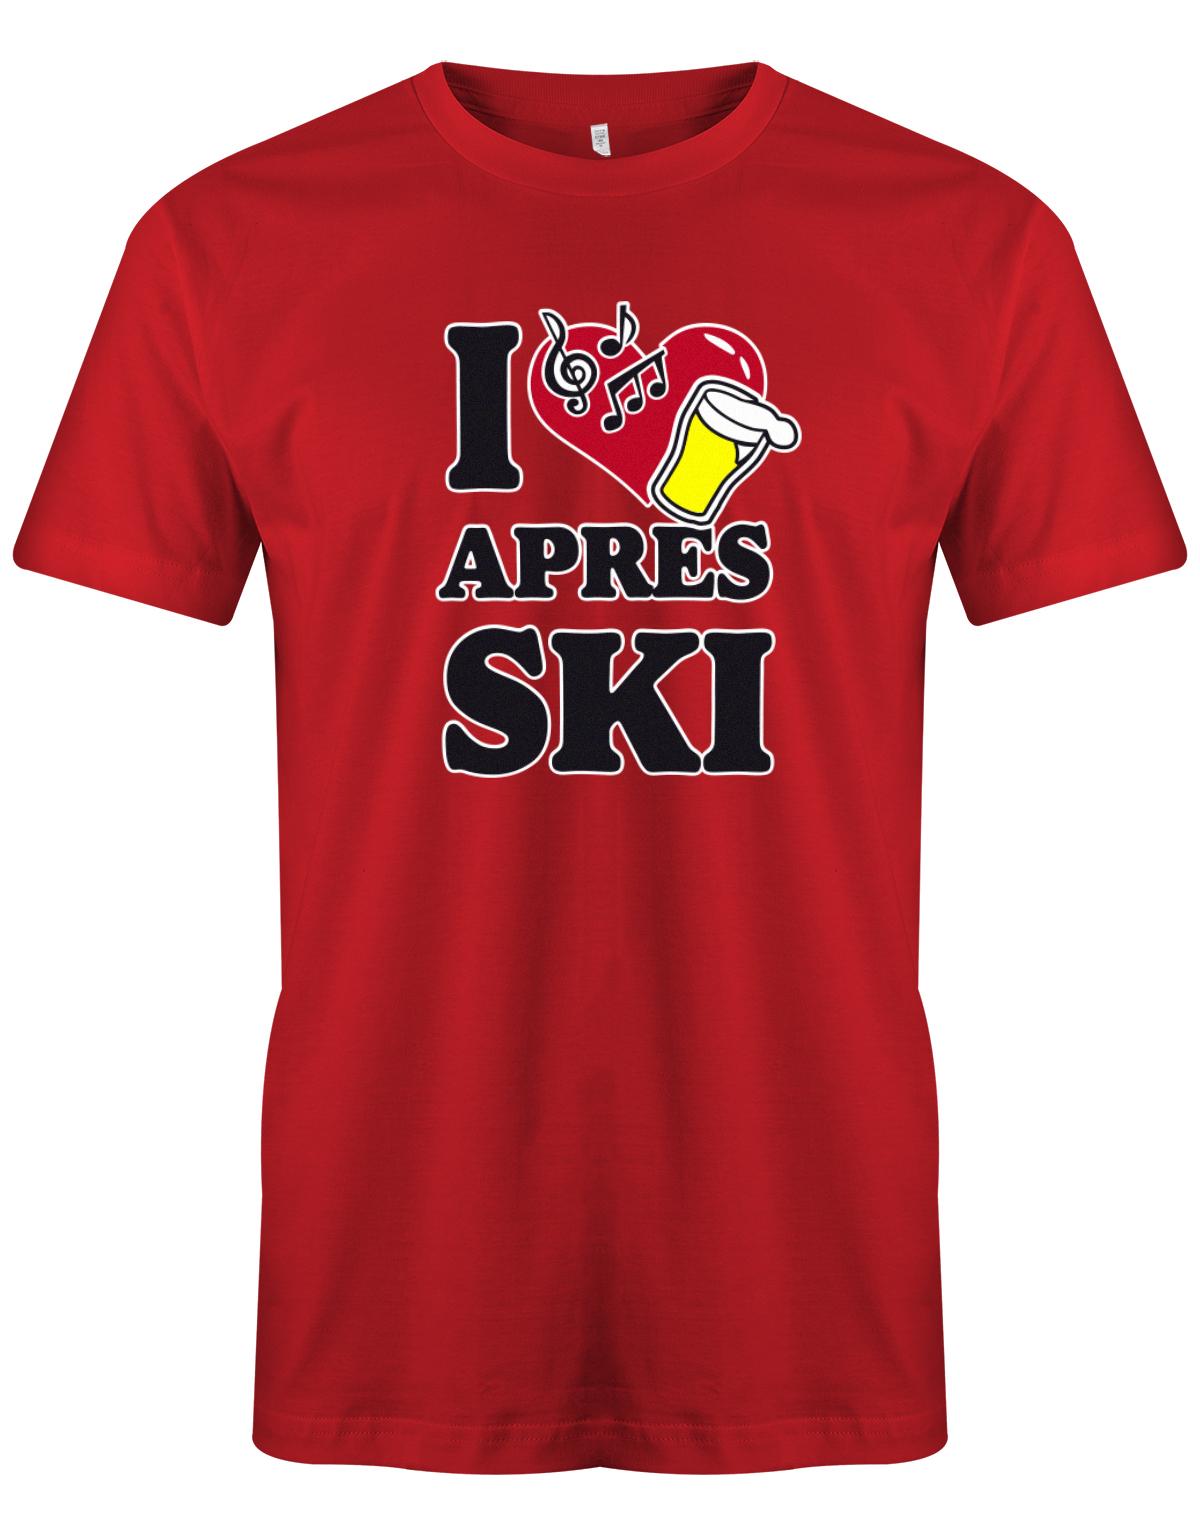 I-love-Apres-Ski-Herren-Shirt-Rot